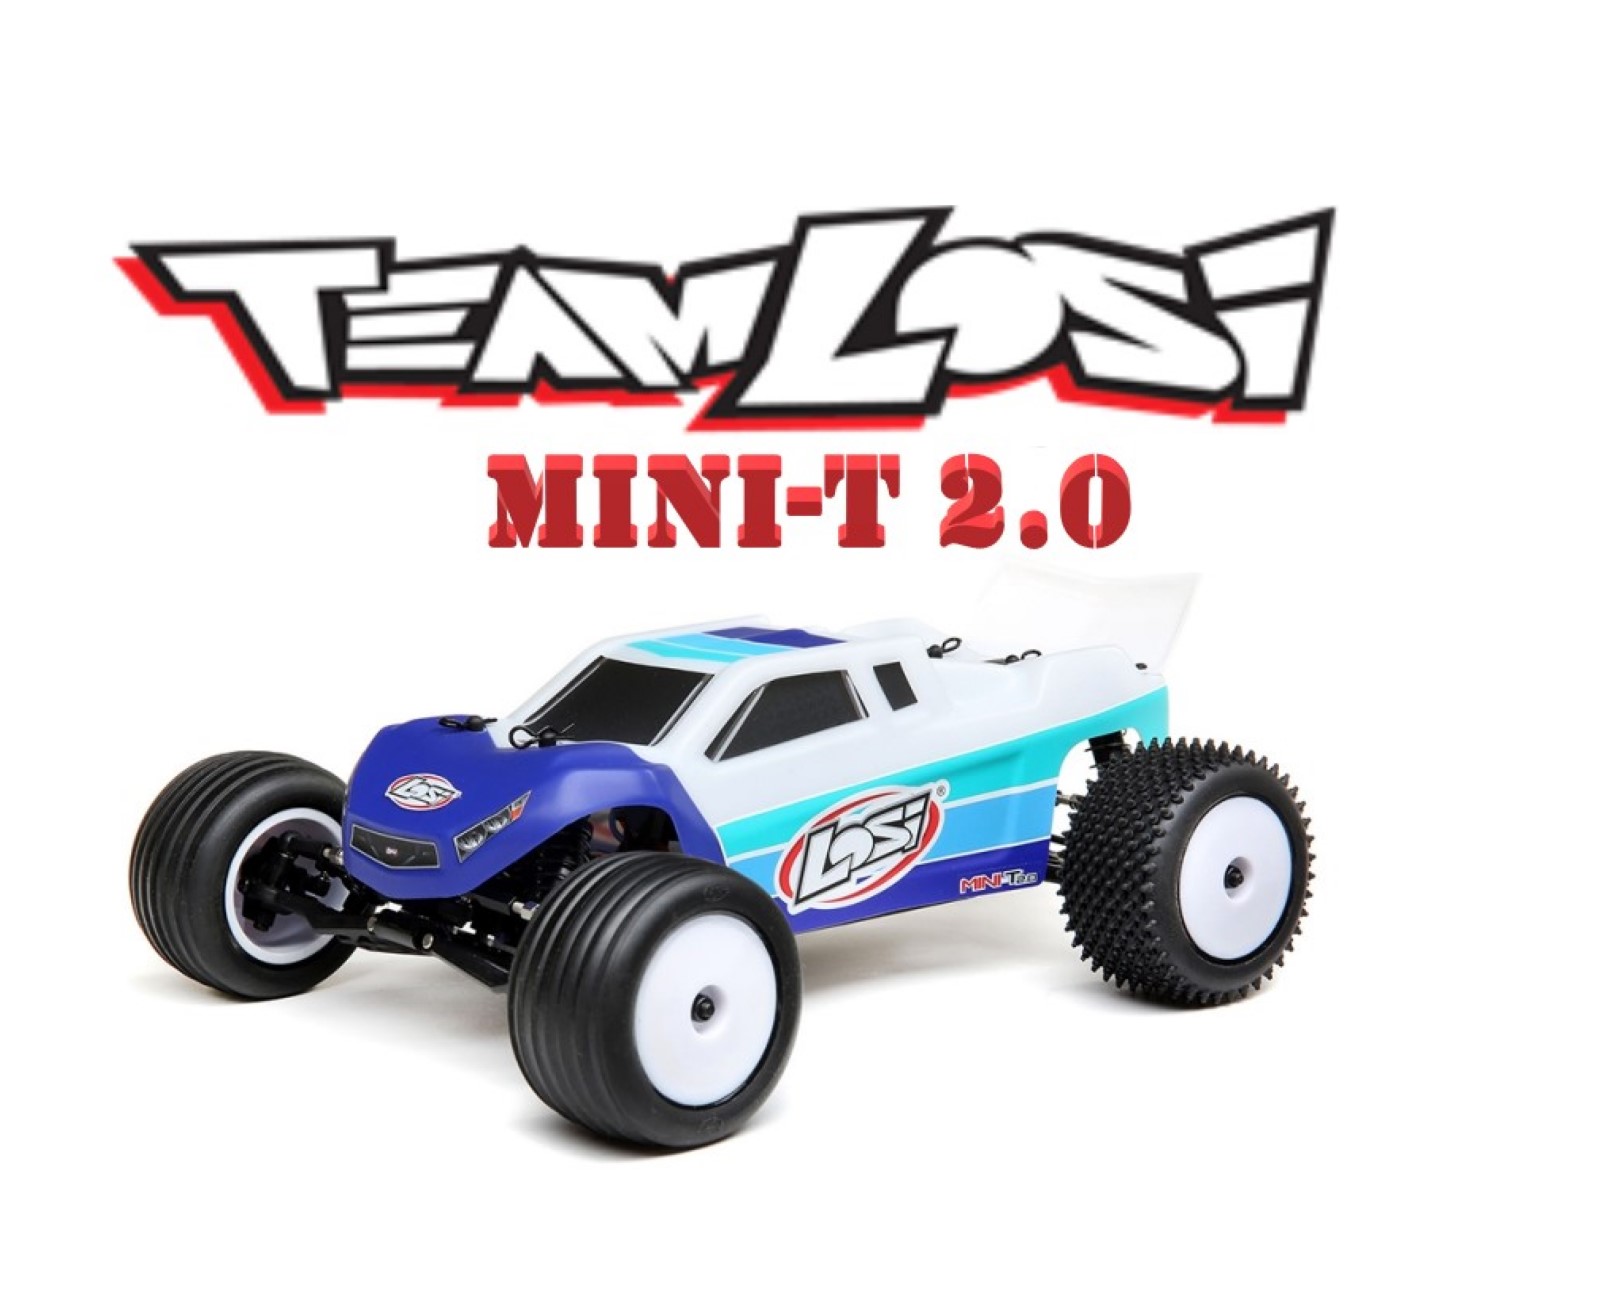 MINI-T 2.0